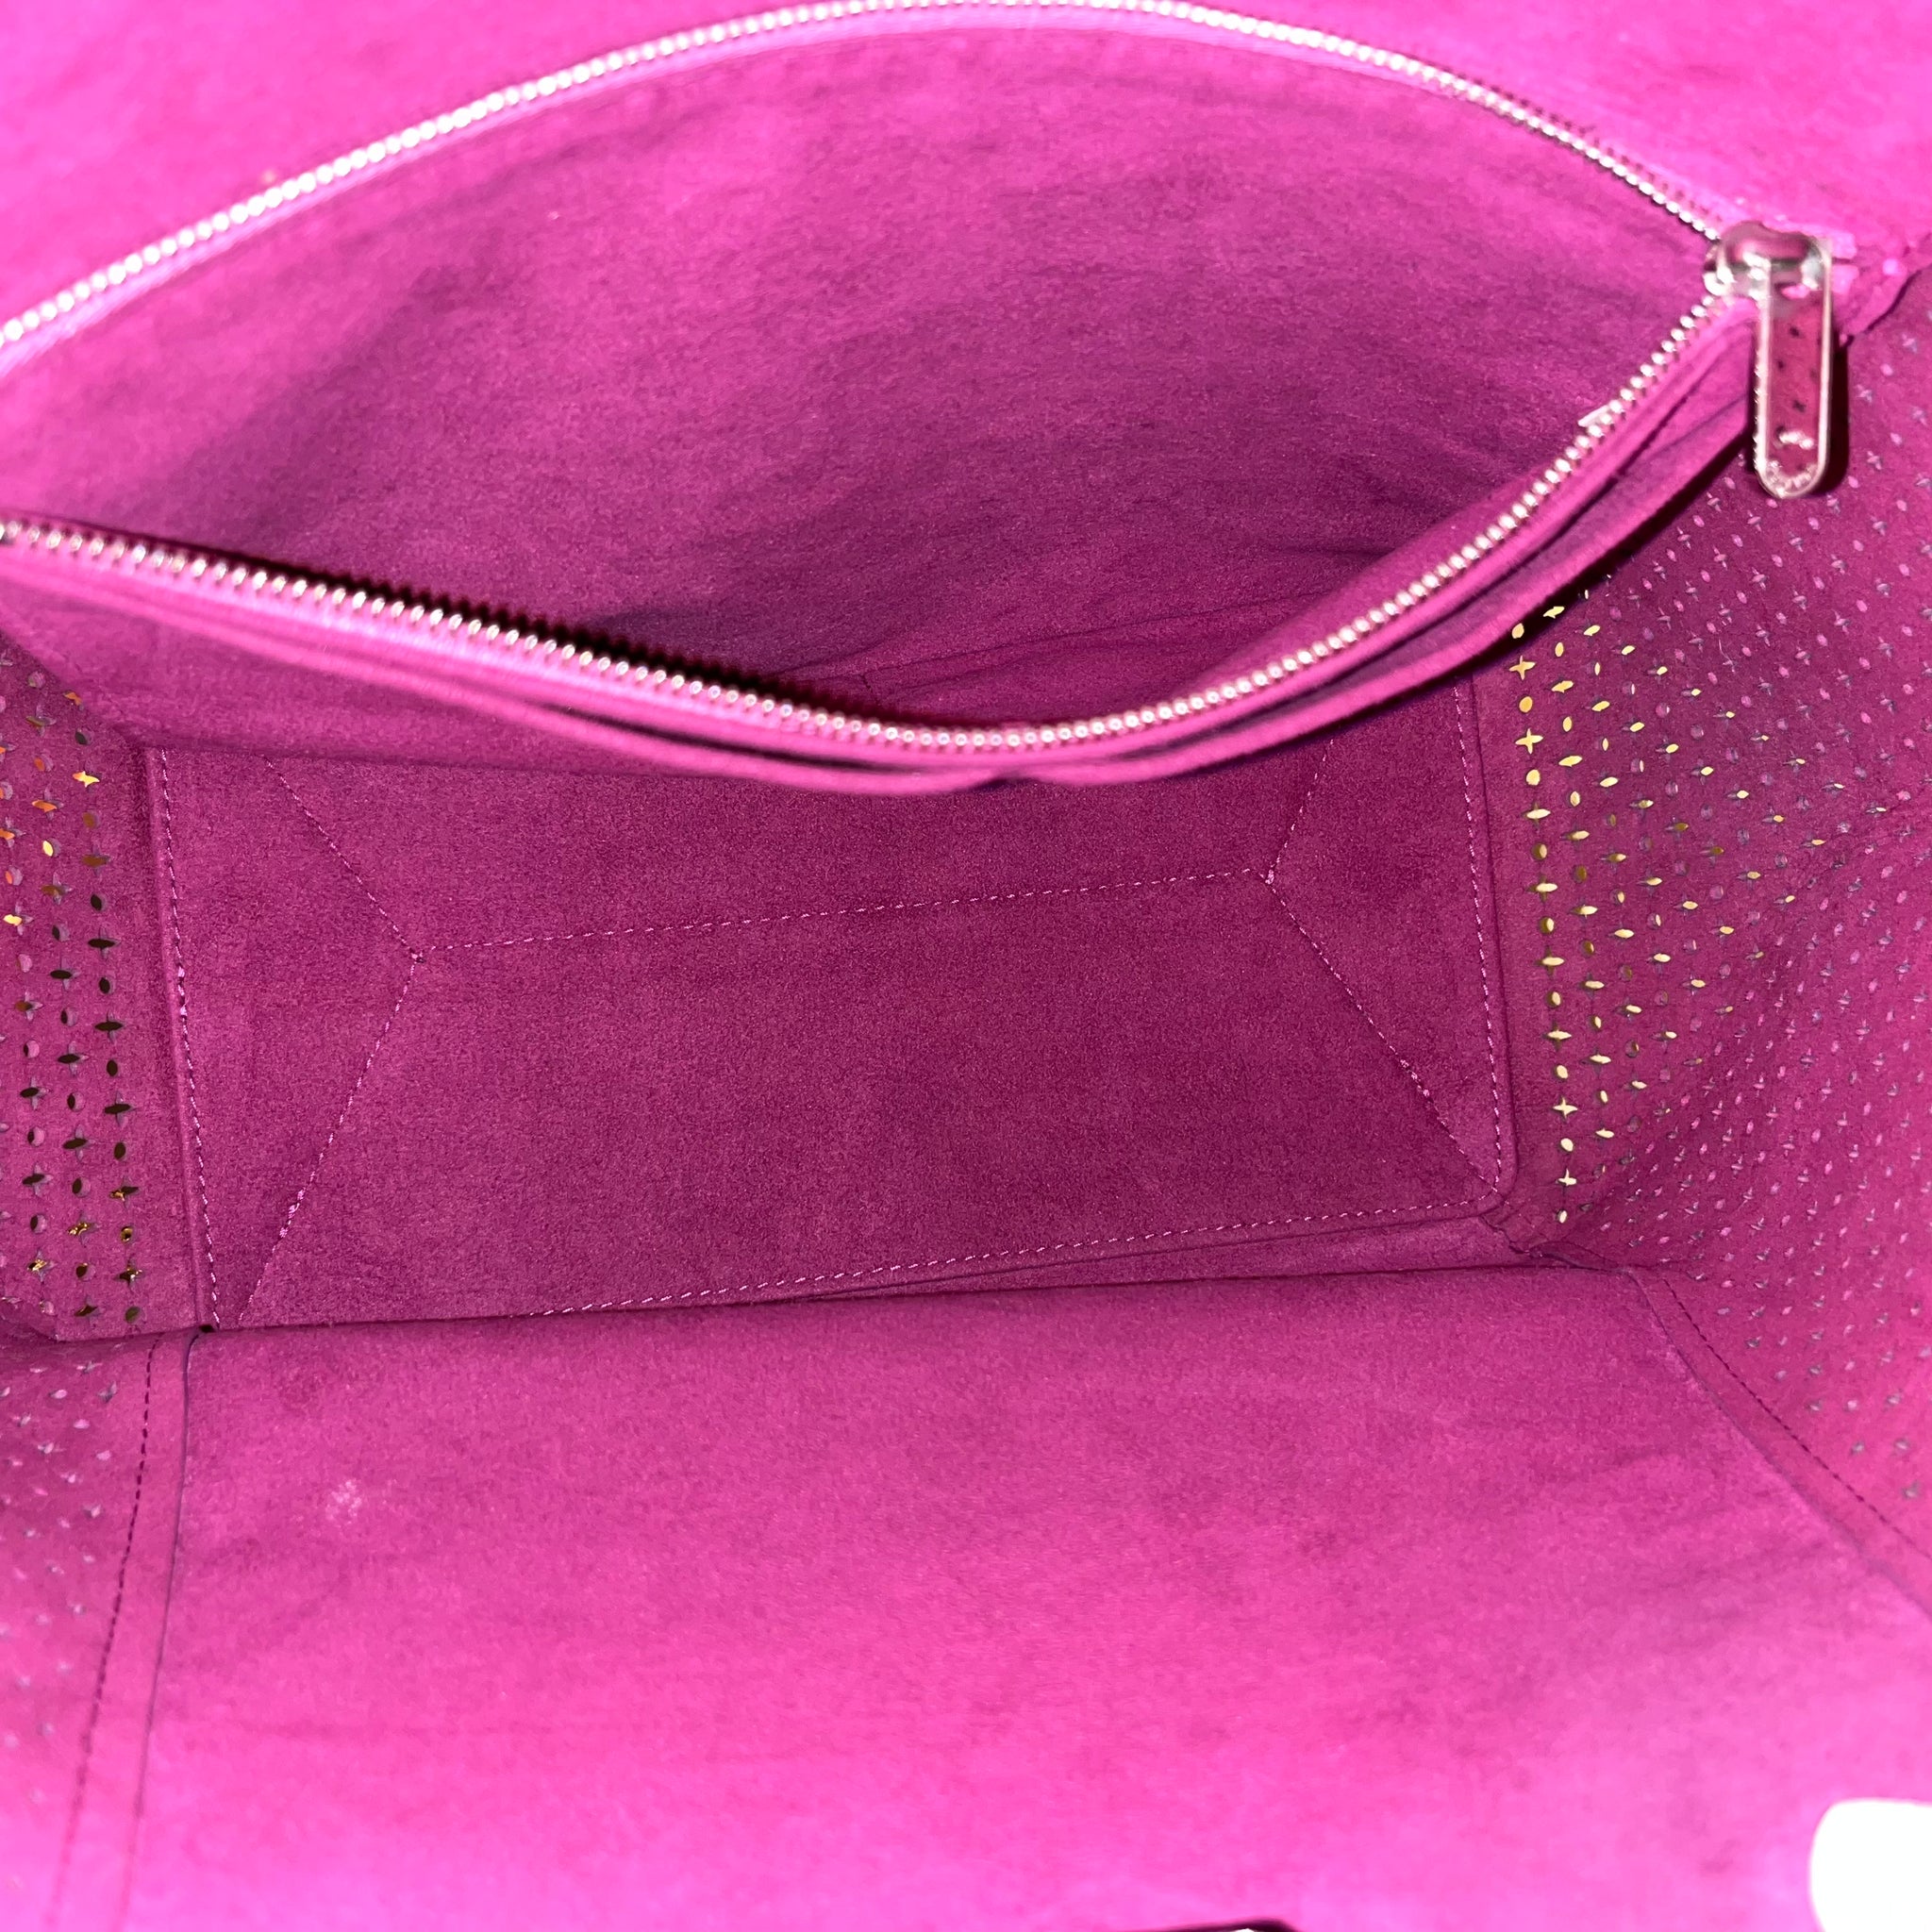 Louis Vuitton Lockme Cabas Tote - Black Totes, Handbags